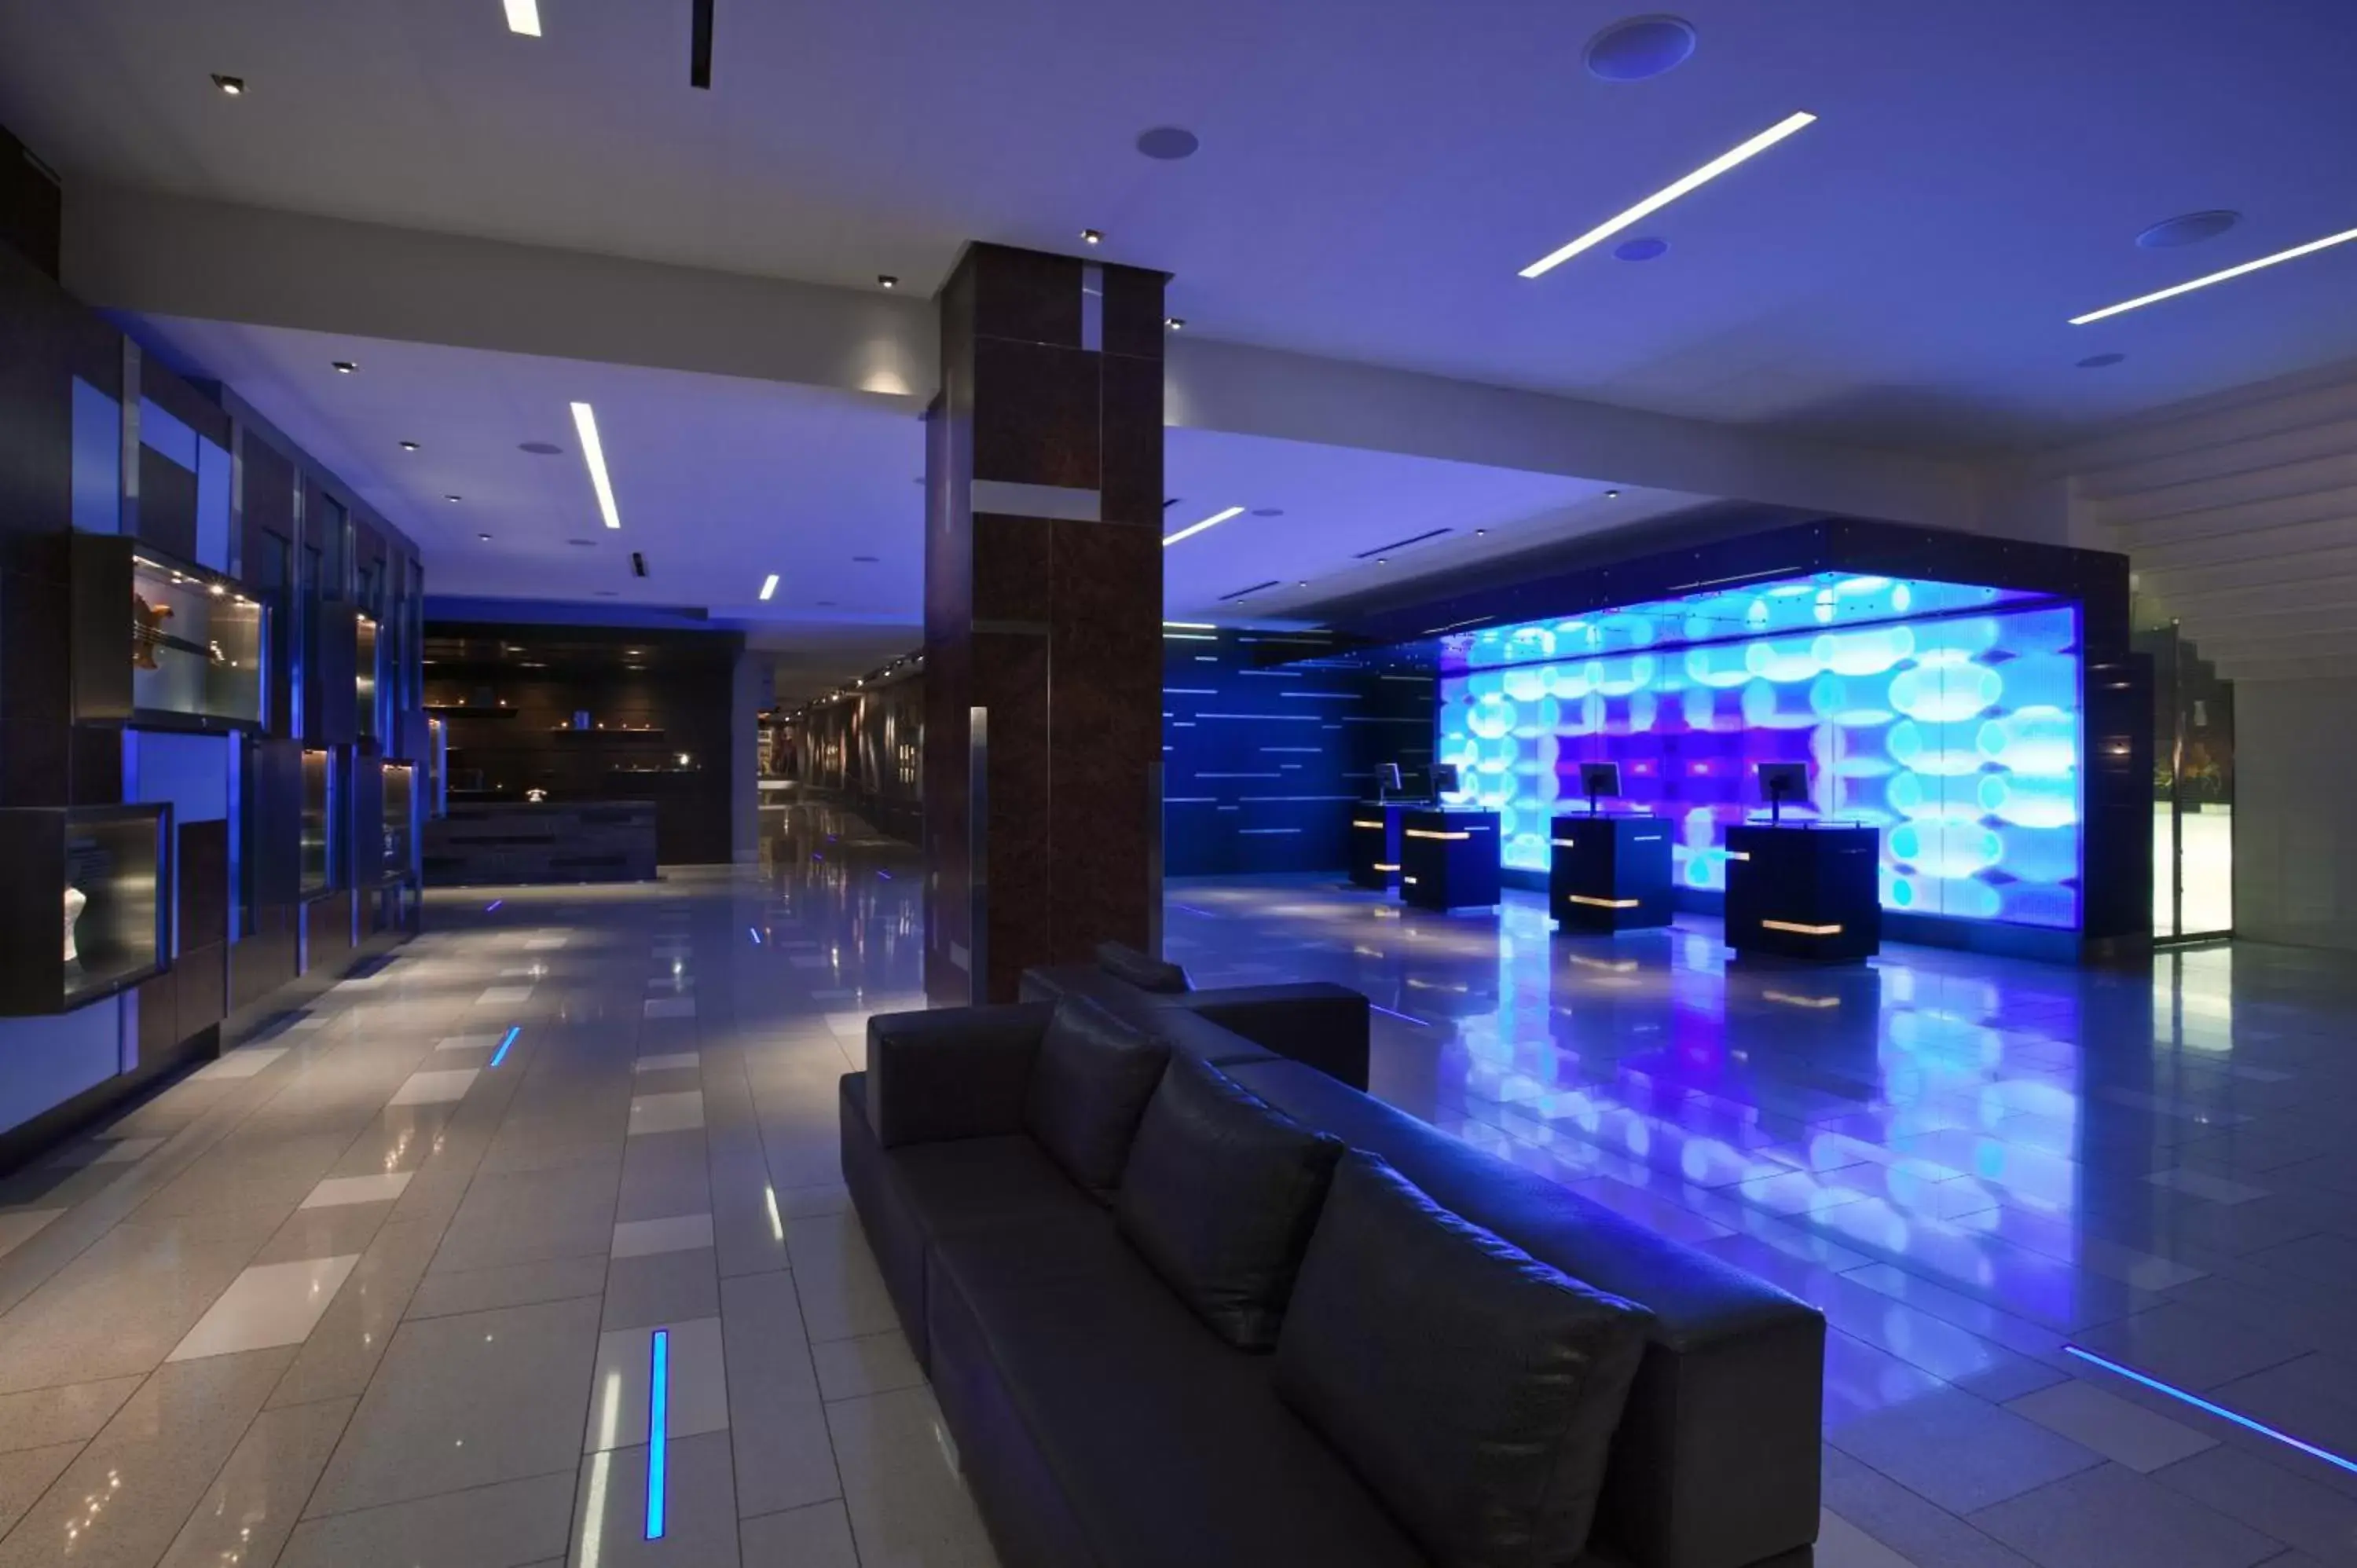 Lobby or reception, Lobby/Reception in Hard Rock Hotel San Diego